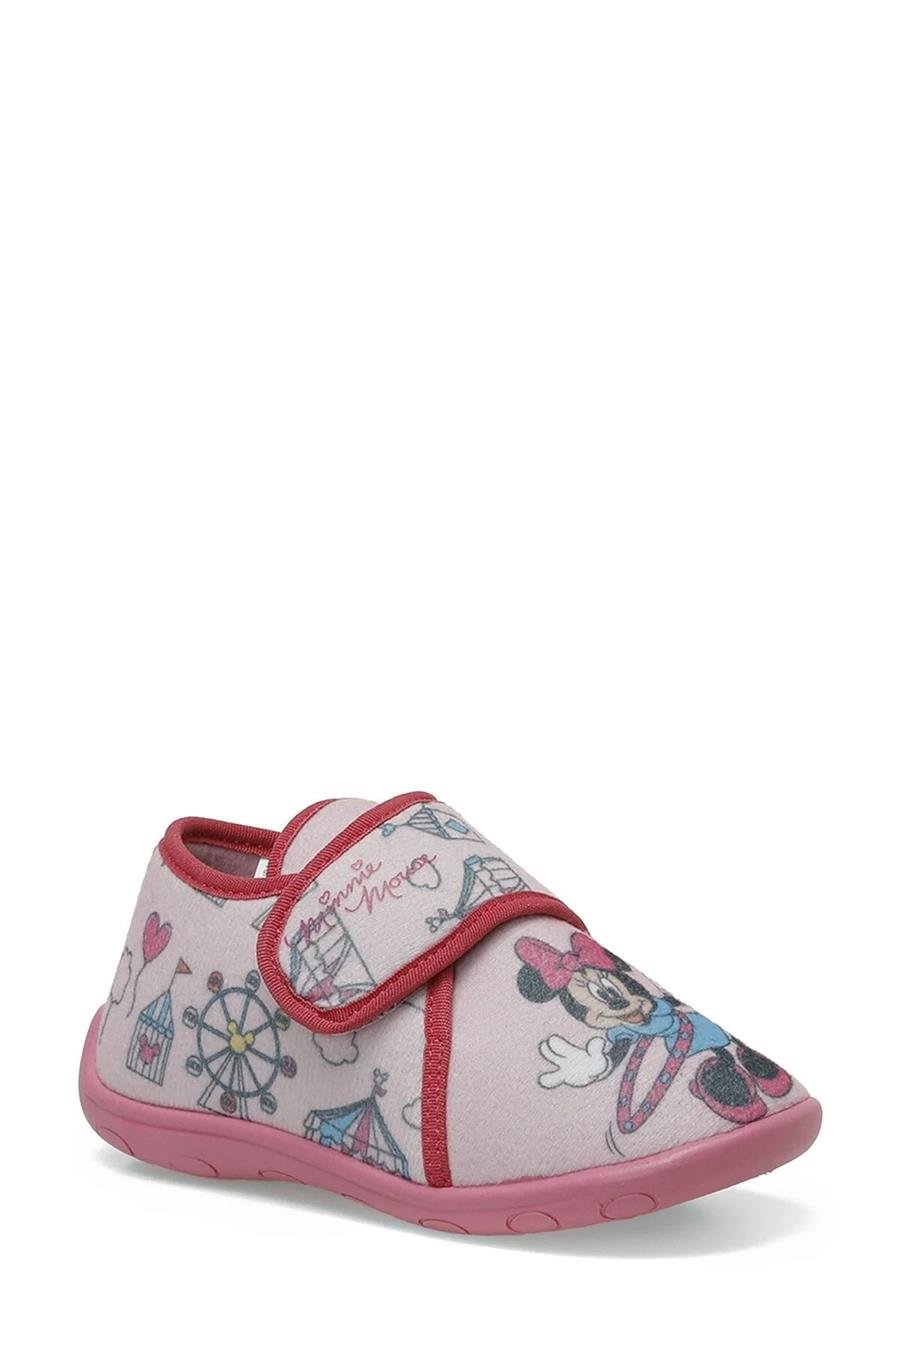 Mickey Mouse Dalı P3Pr Pembe Patik Kız Çocuk Panduf Ayakkabı